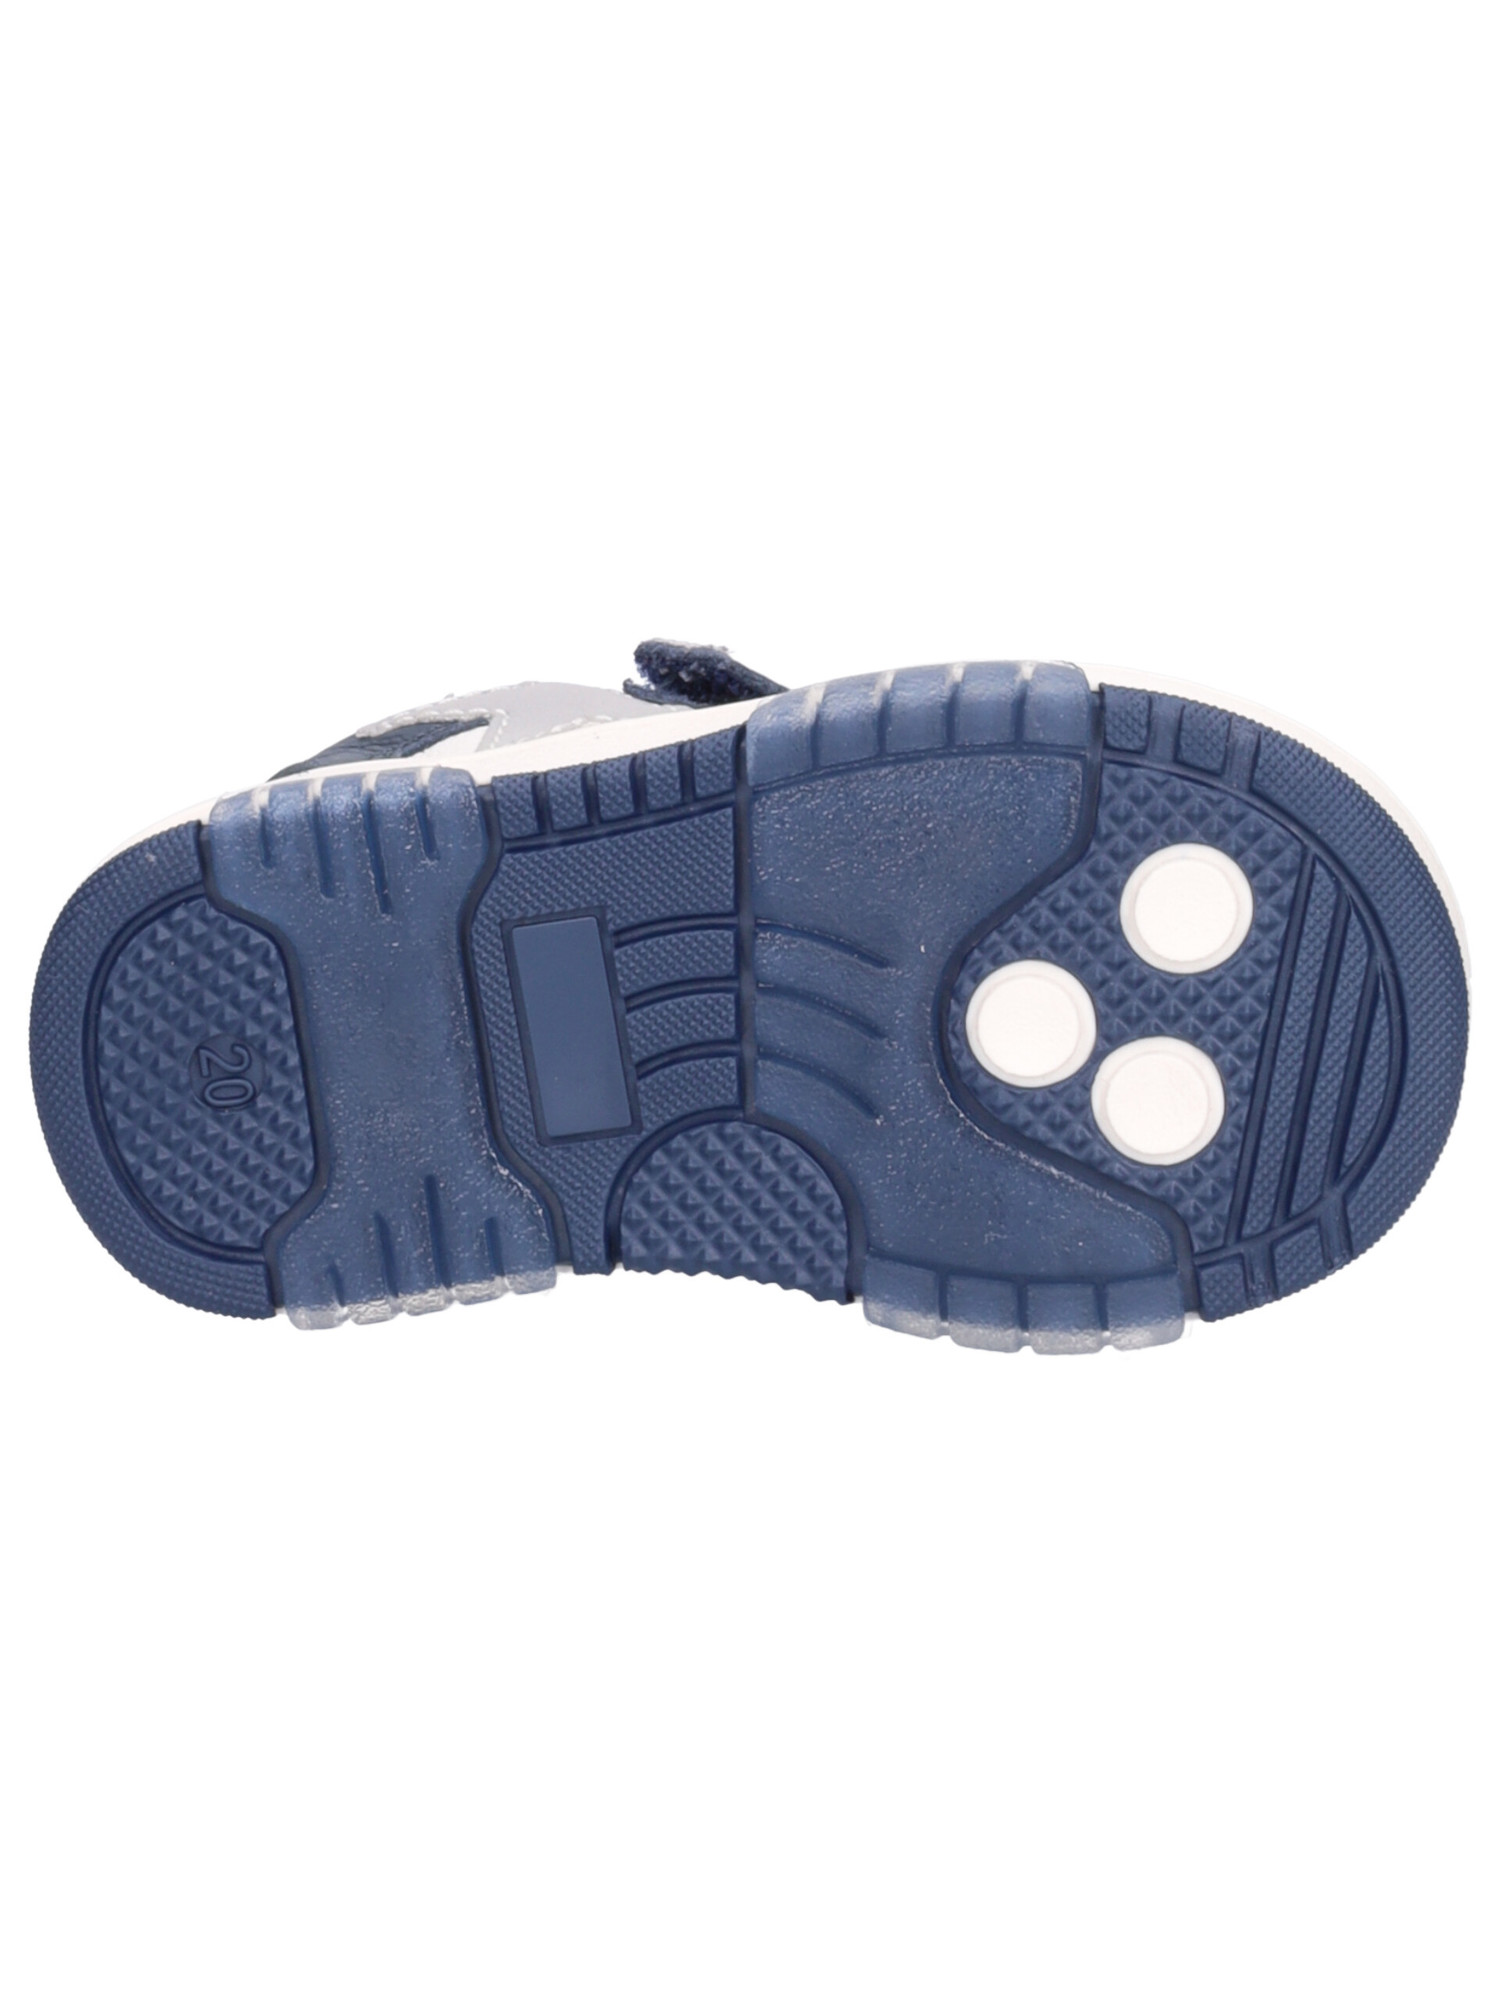 sneaker-balducci-primi-passi-bambino-blu-f588ca